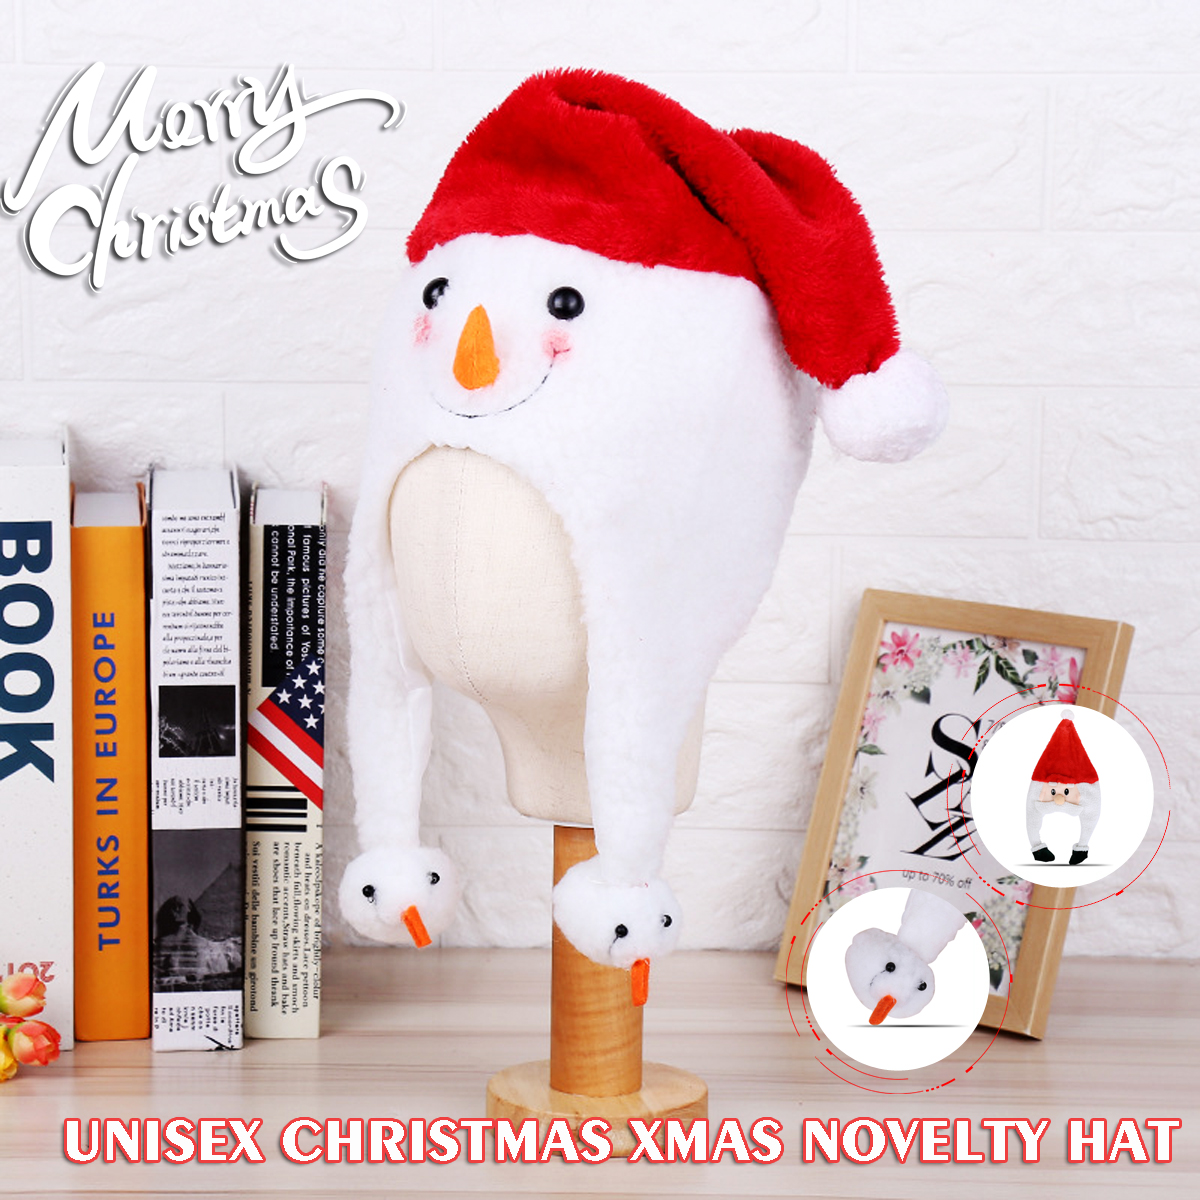 Unisex-Christmas-Xmas-Novelty-Plush-Hat-Santa-Claus-Hat-Holiday-Decoration-1747495-1